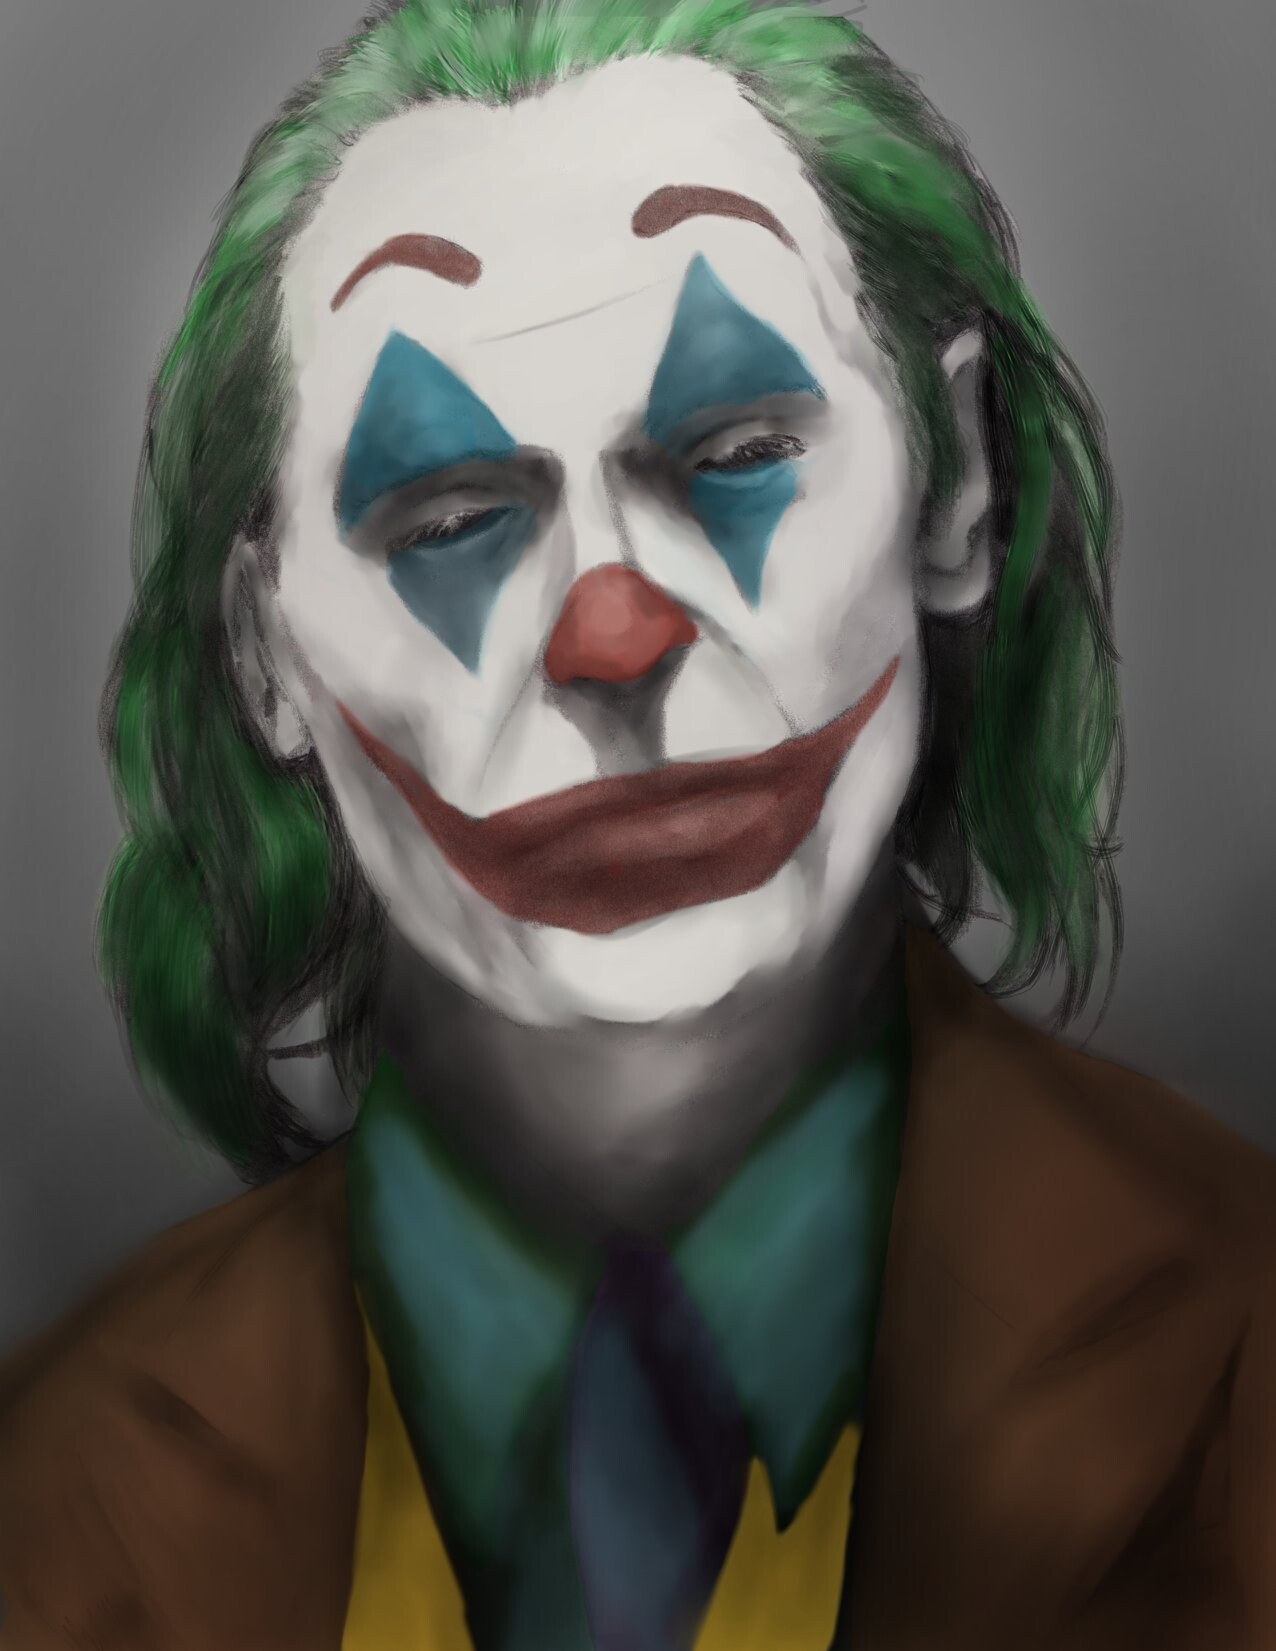 ArtStation - The Joker